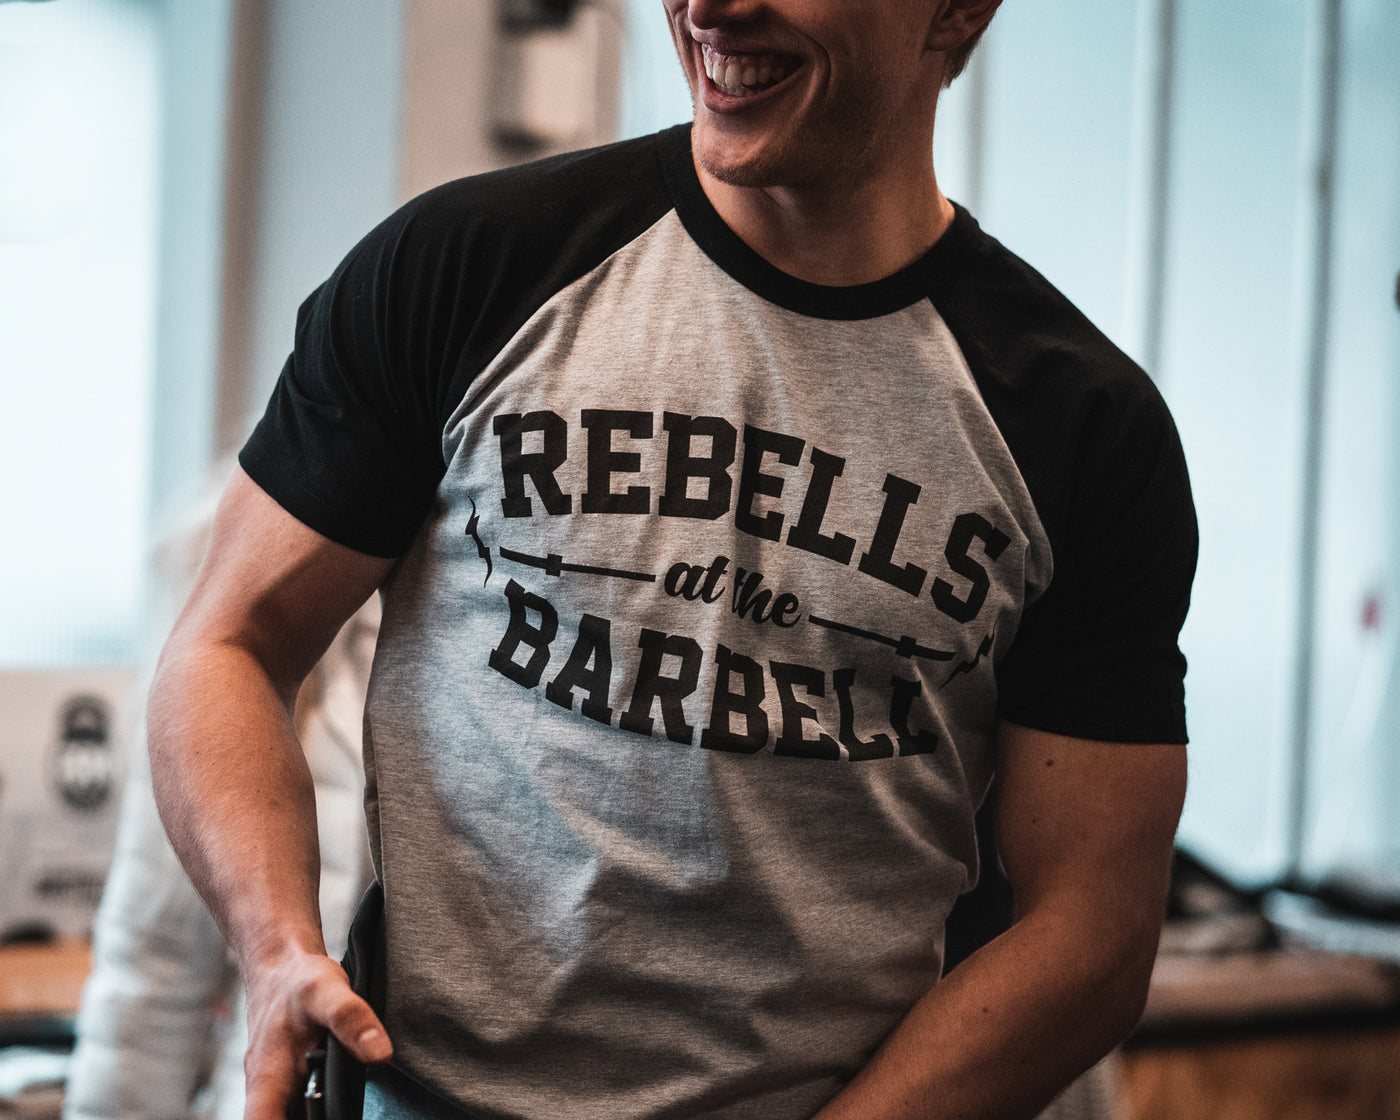 Rebels at the Barbell Baseball Shirt